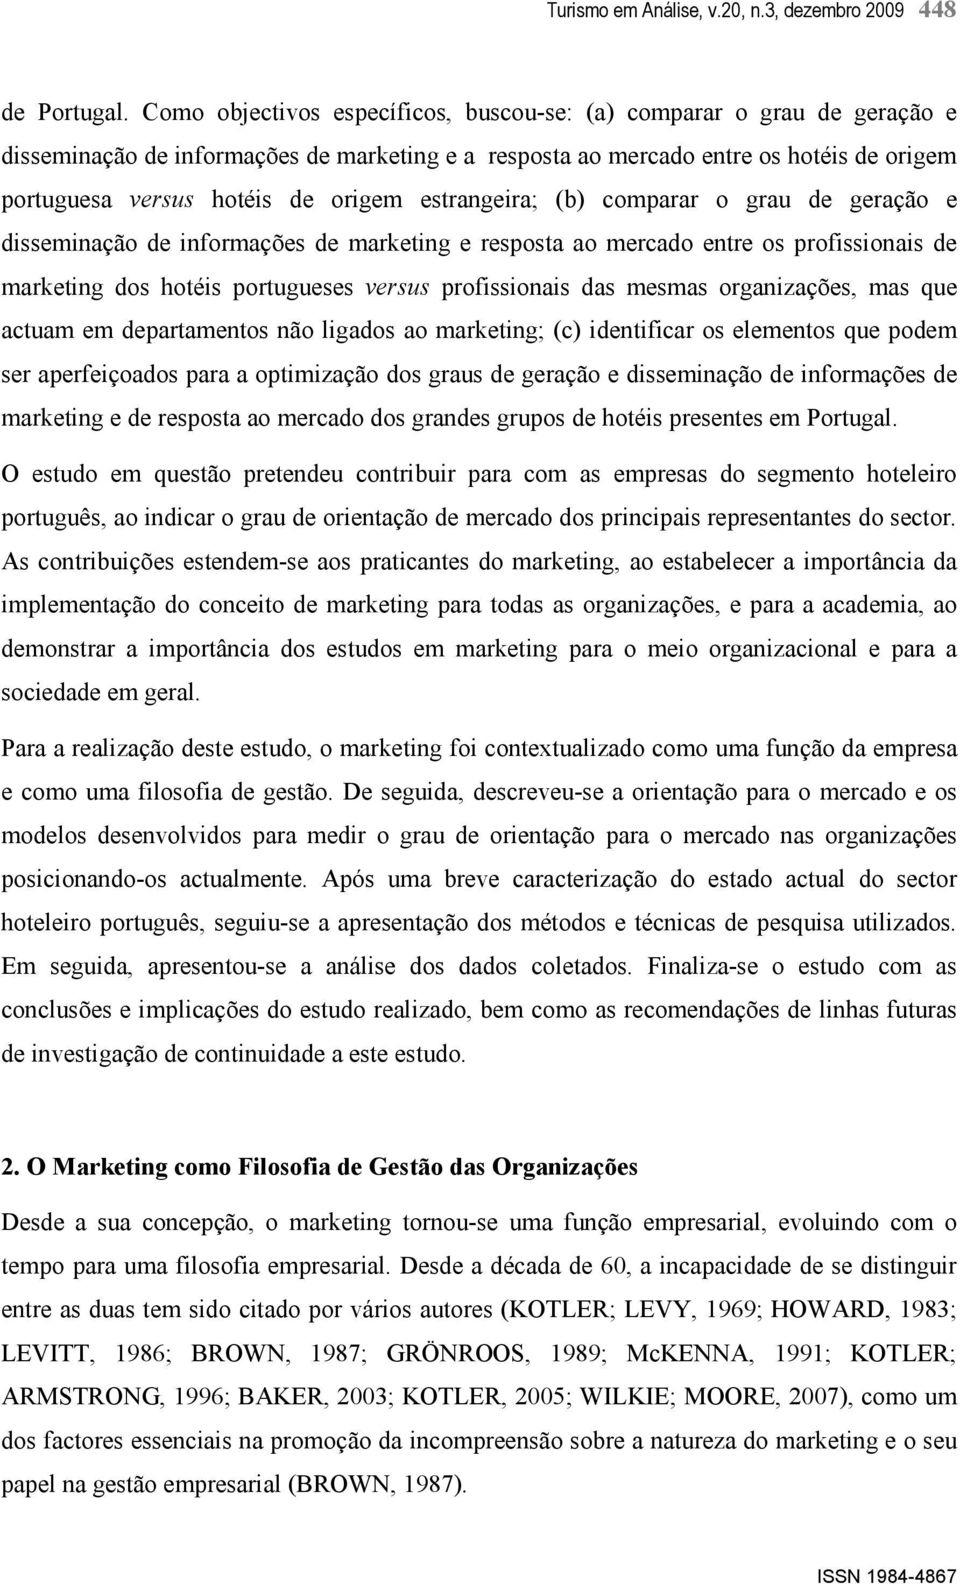 estrangeira; (b) comparar o grau de geração e disseminação de informações de marketing e resposta ao mercado entre os profissionais de marketing dos hotéis portugueses versus profissionais das mesmas